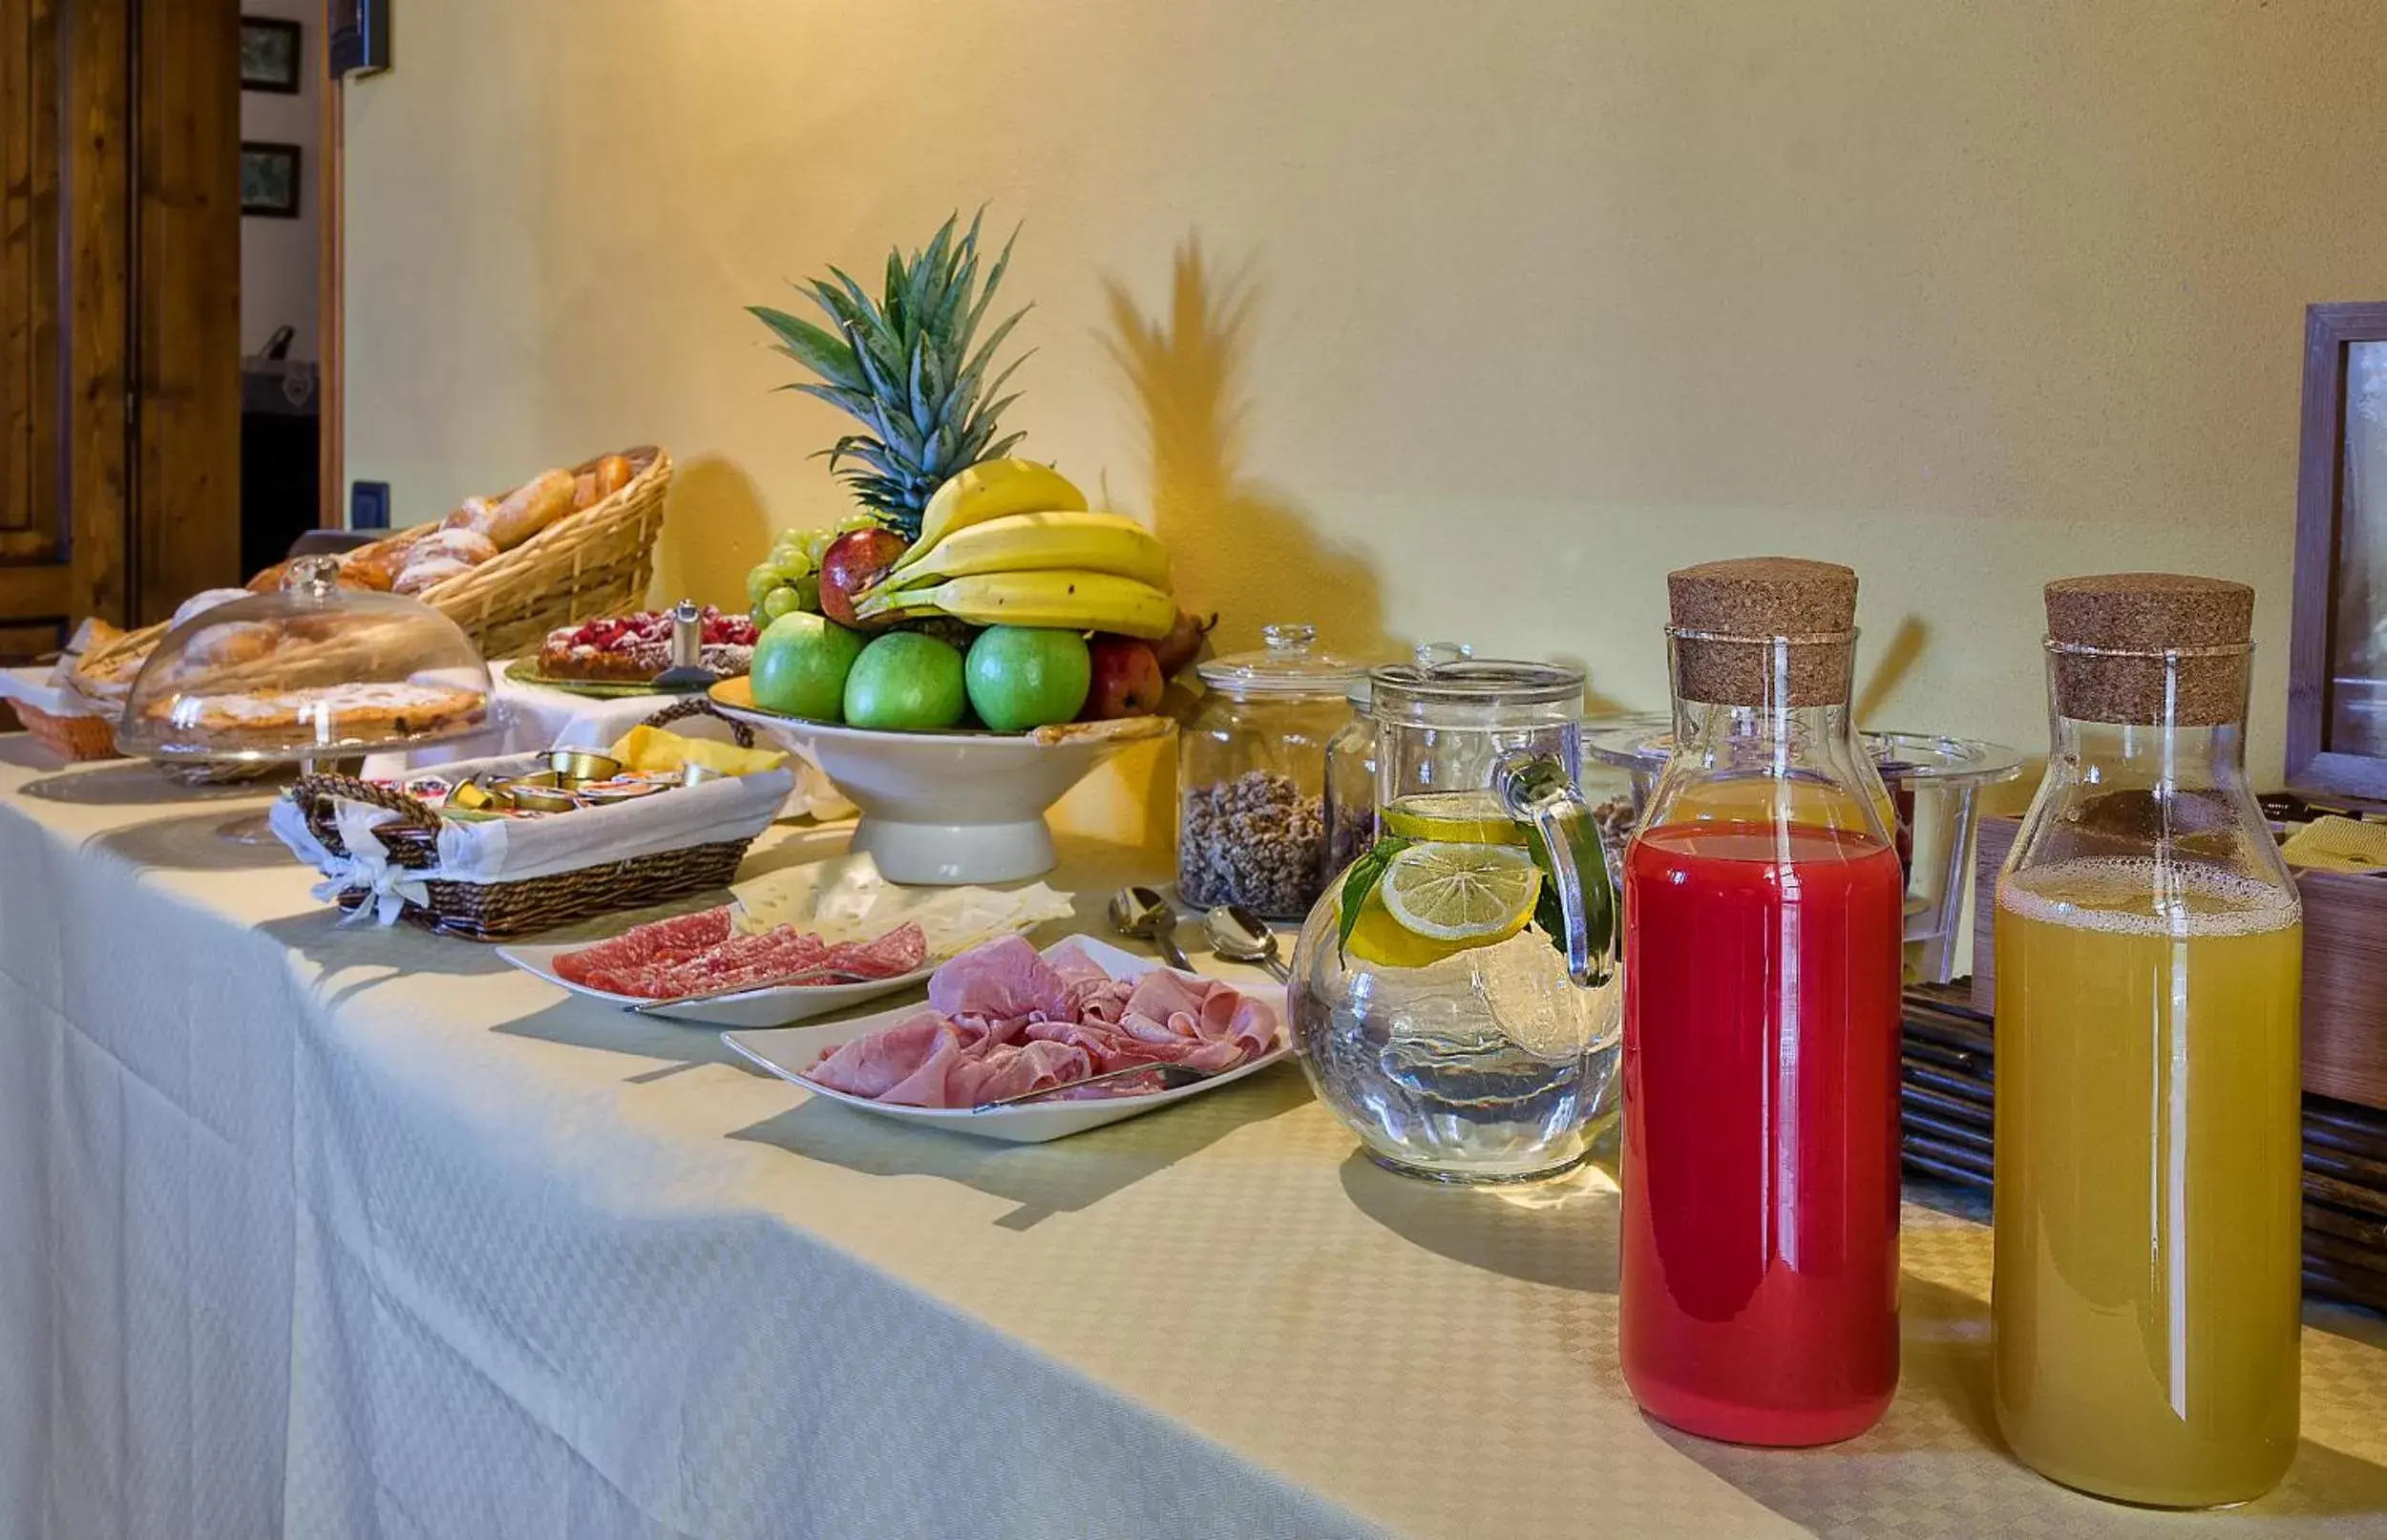 Buffet breakfast in Pisa Holidays